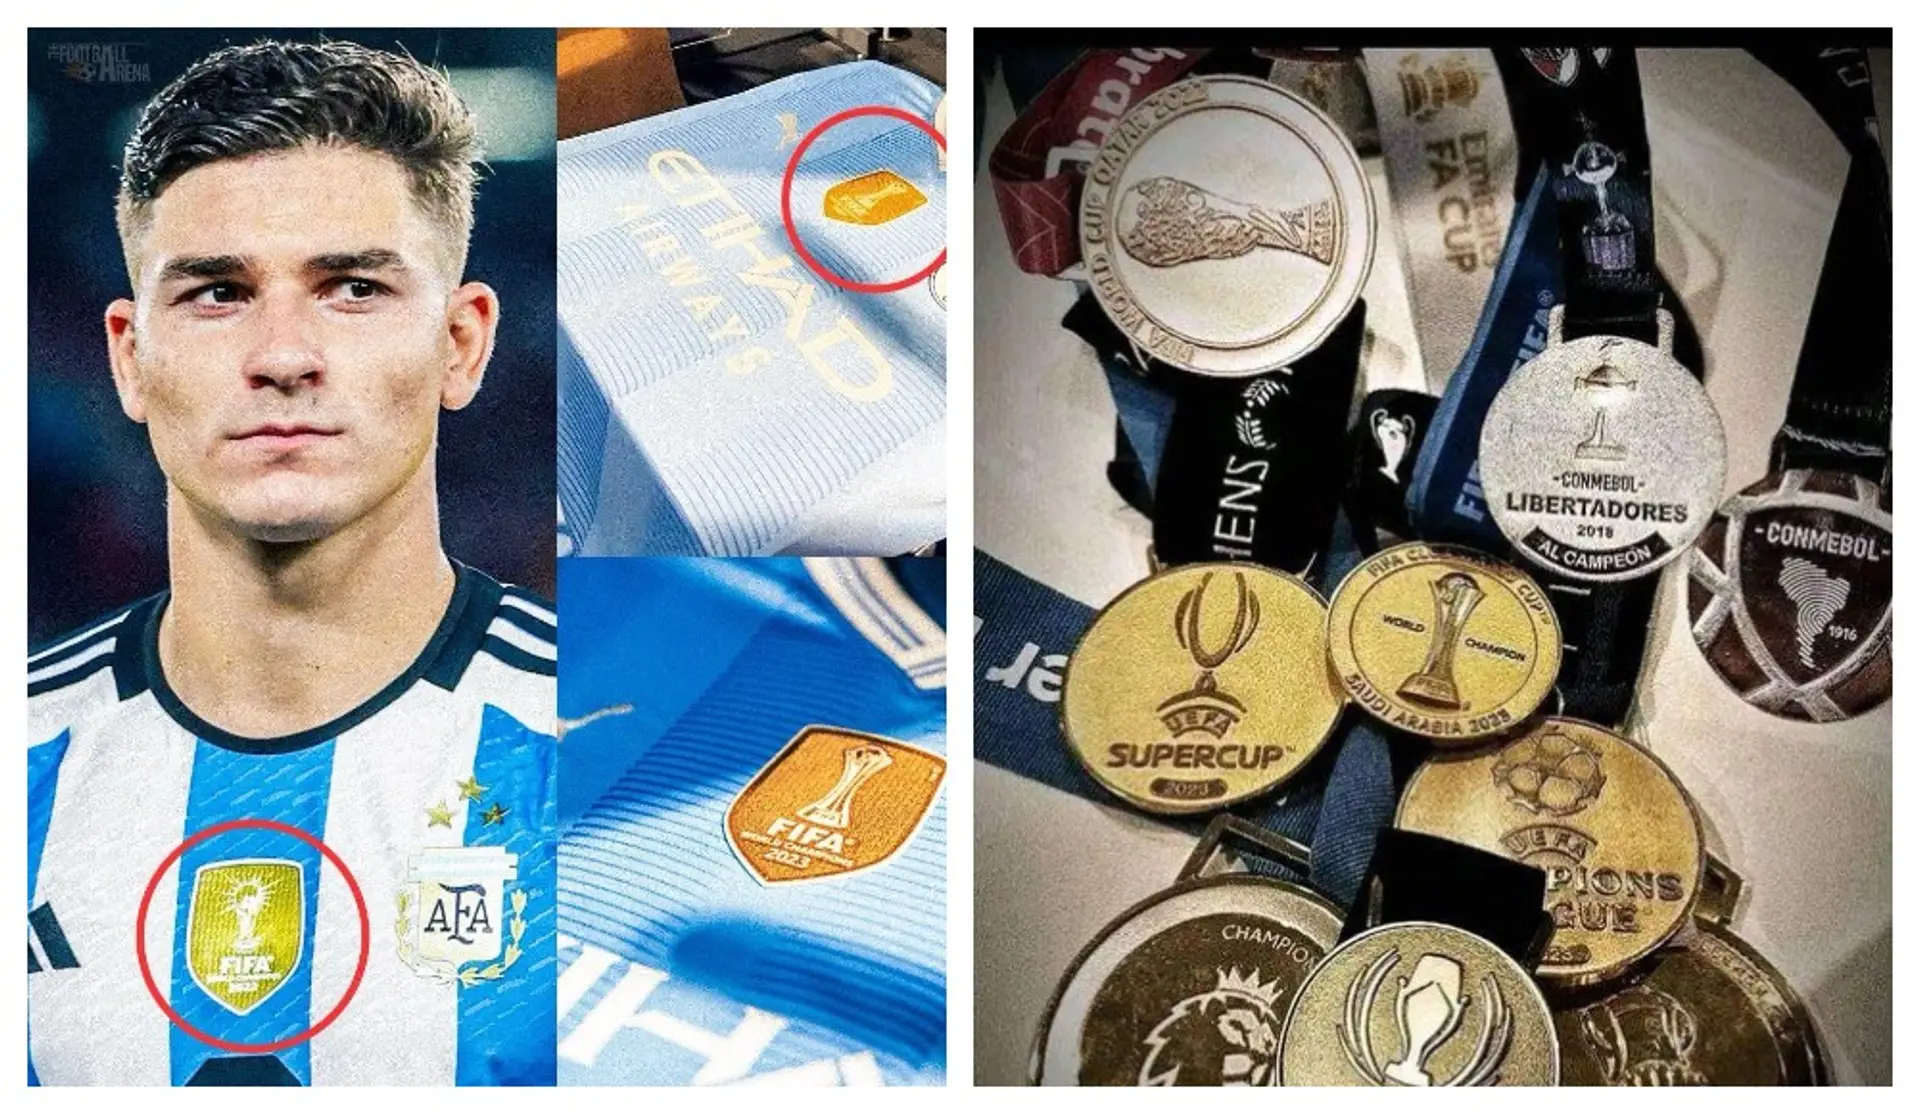 À 23 ans, Julian Alvarez a déjà tout gagné : il a également réussi un exploit qu'aucun autre footballeur au monde ne peut égaler.